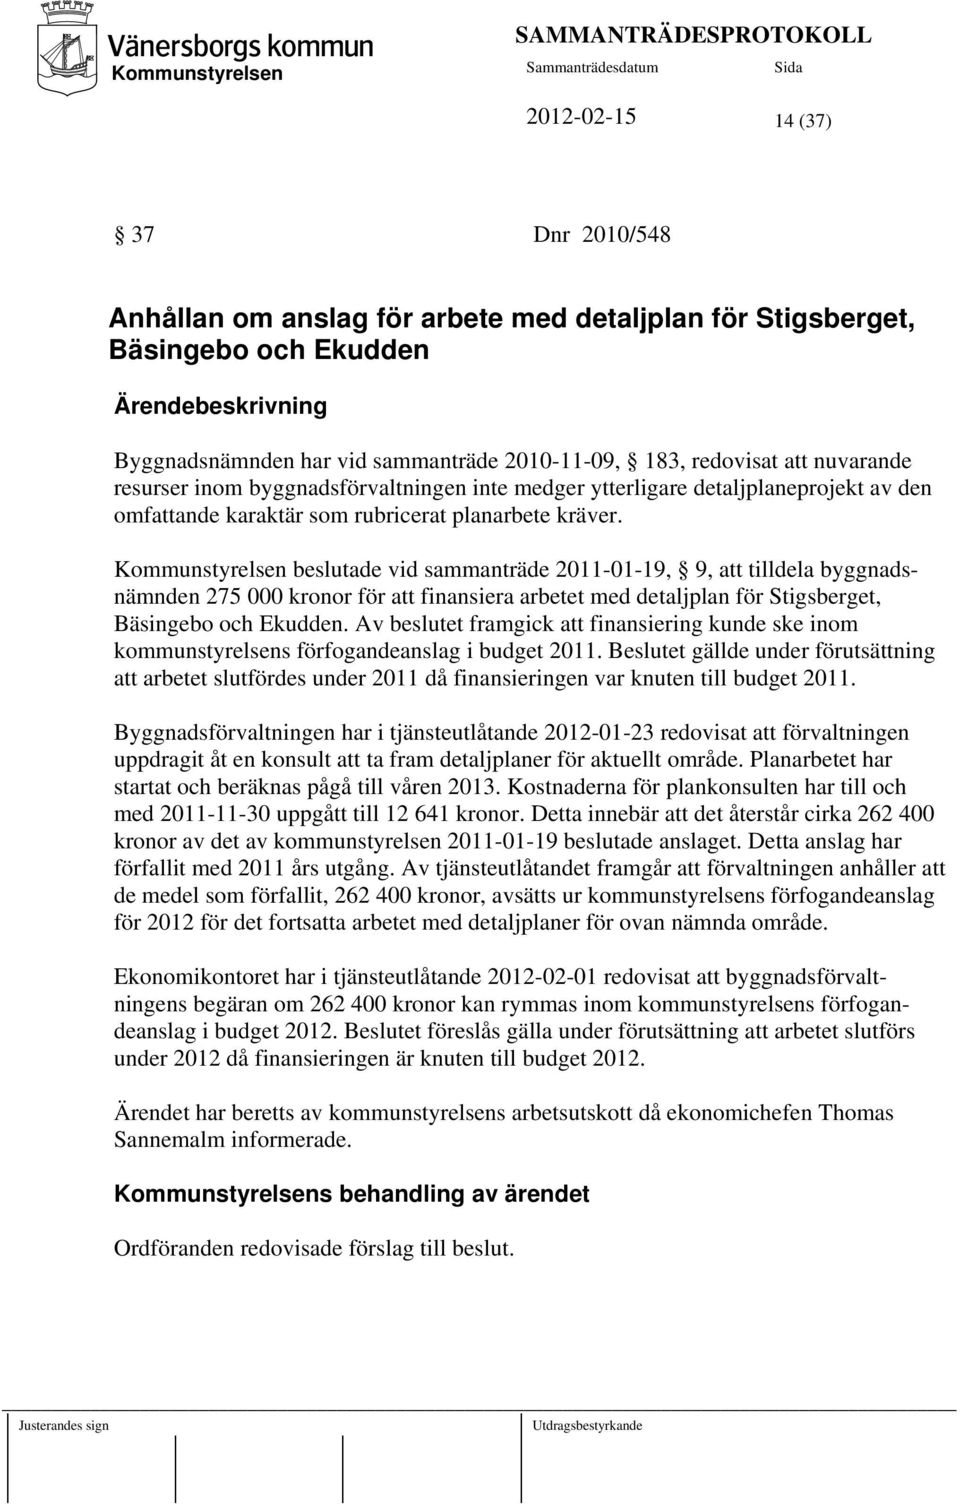 beslutade vid sammanträde 2011-01-19, 9, att tilldela byggnadsnämnden 275 000 kronor för att finansiera arbetet med detaljplan för Stigsberget, Bäsingebo och Ekudden.